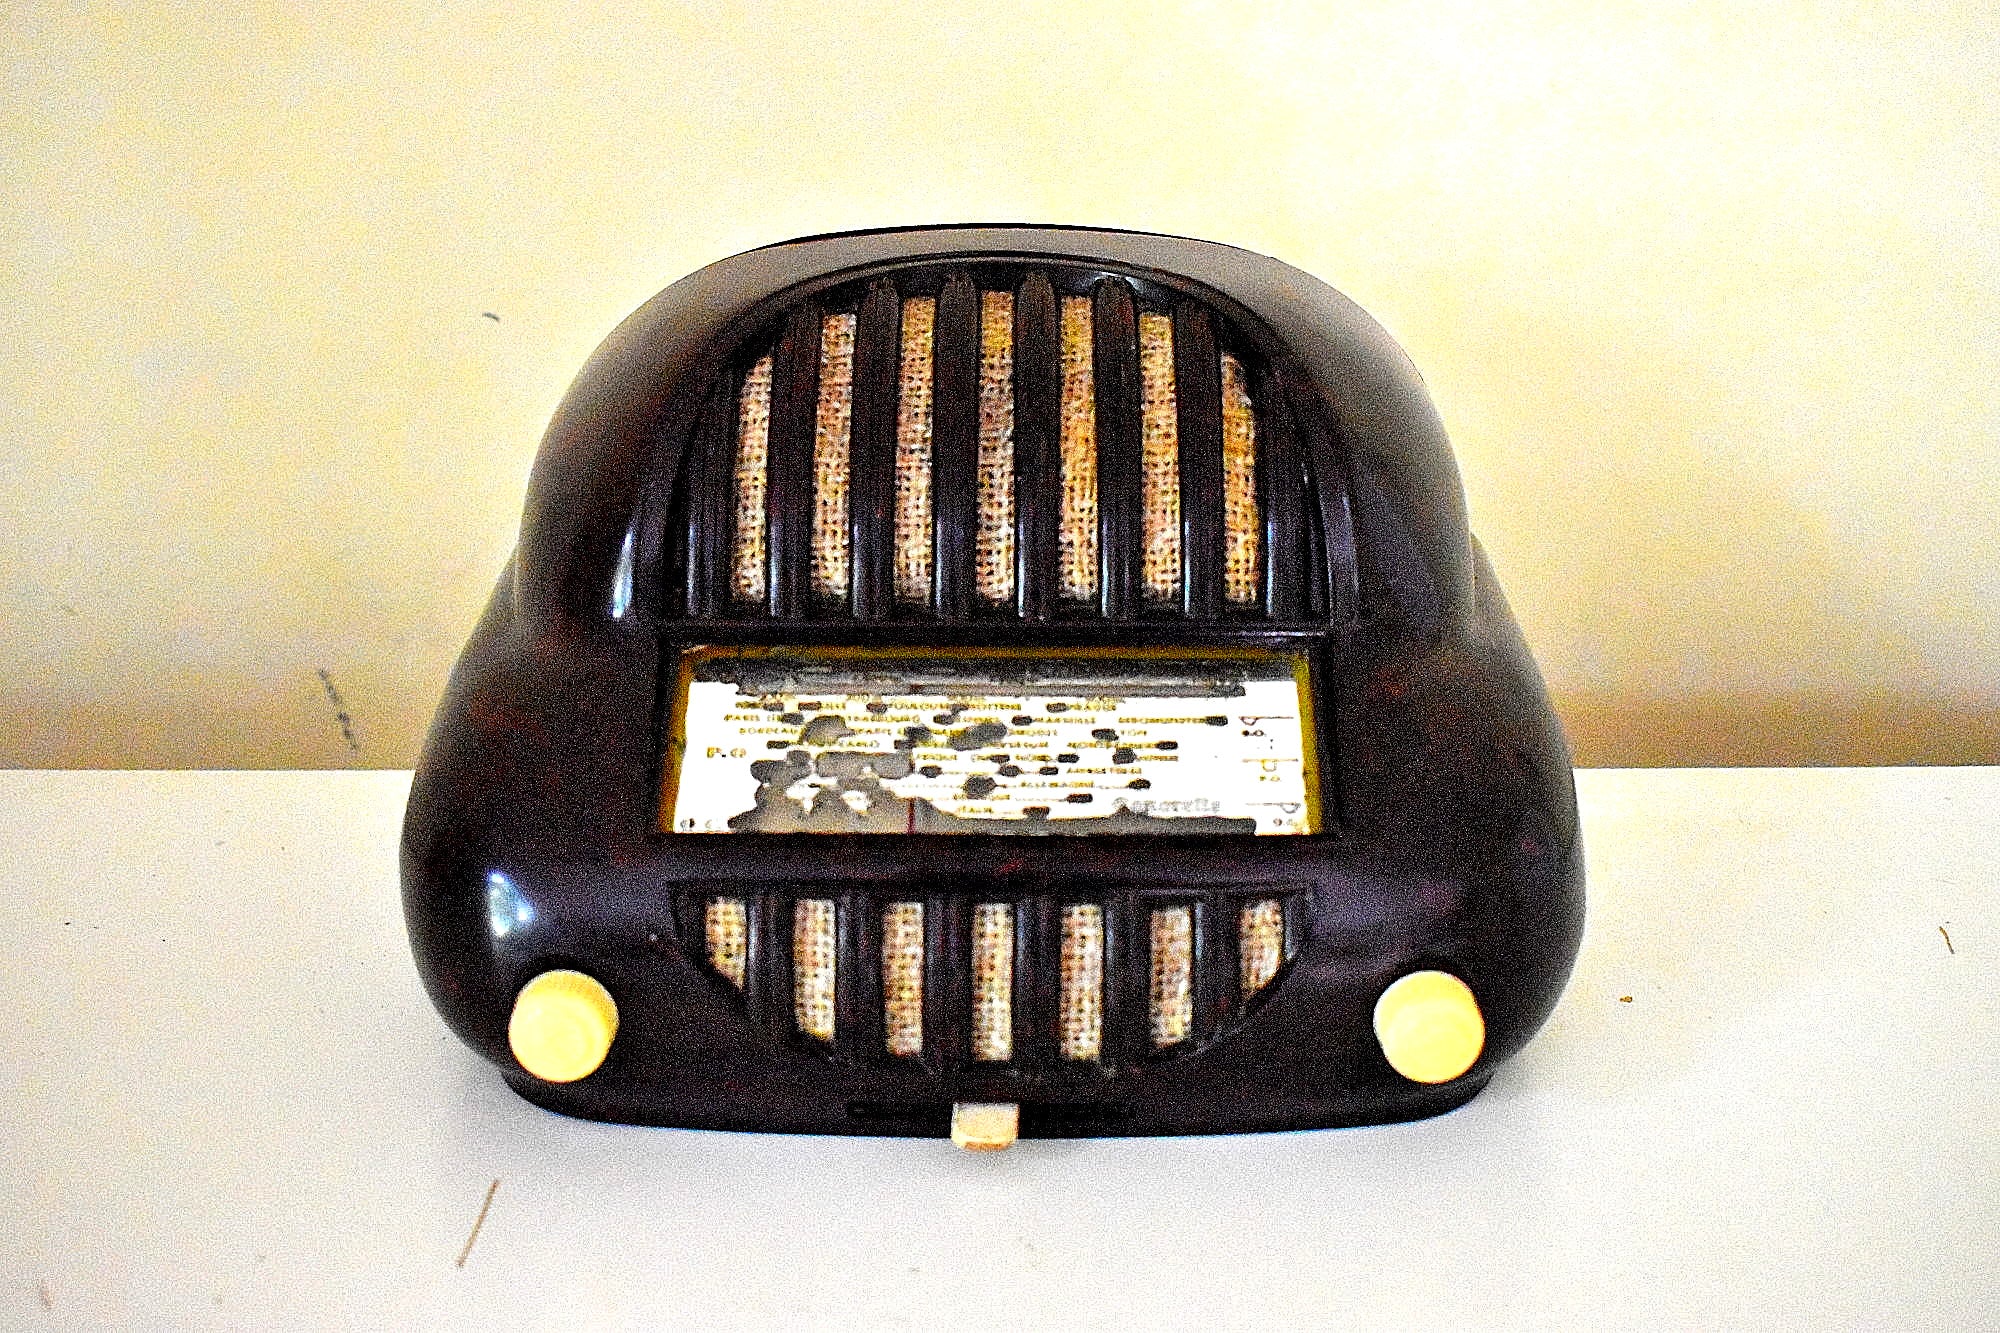 信じられないほどの 1951 年ソノラ ソノレット モデル 50 AM 短波真空管ラジオ 息をのむほどです。